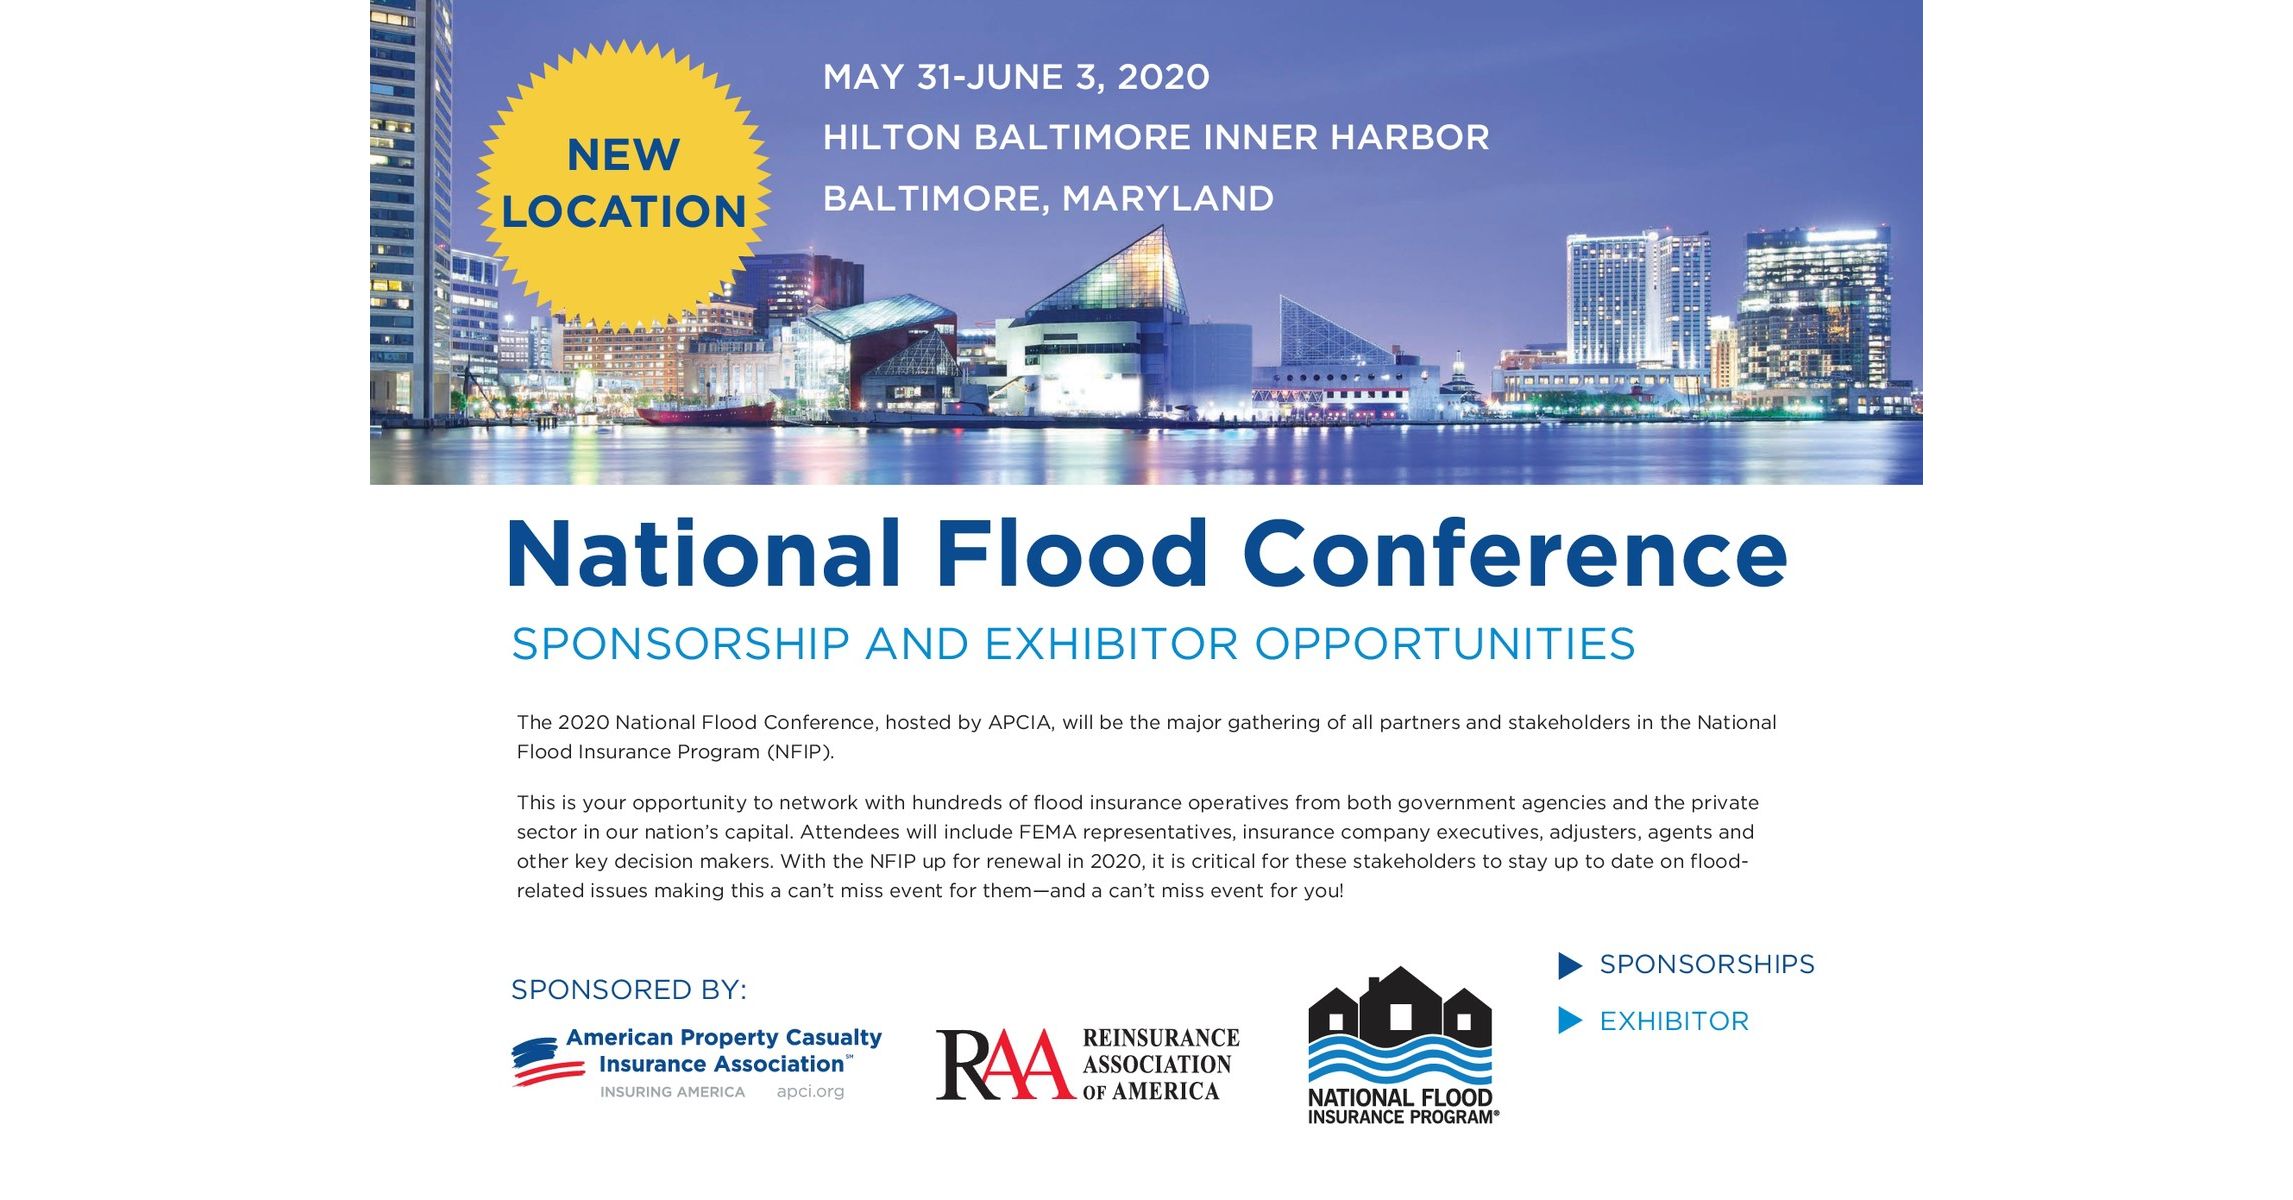 National Flood Conference Sponsorship